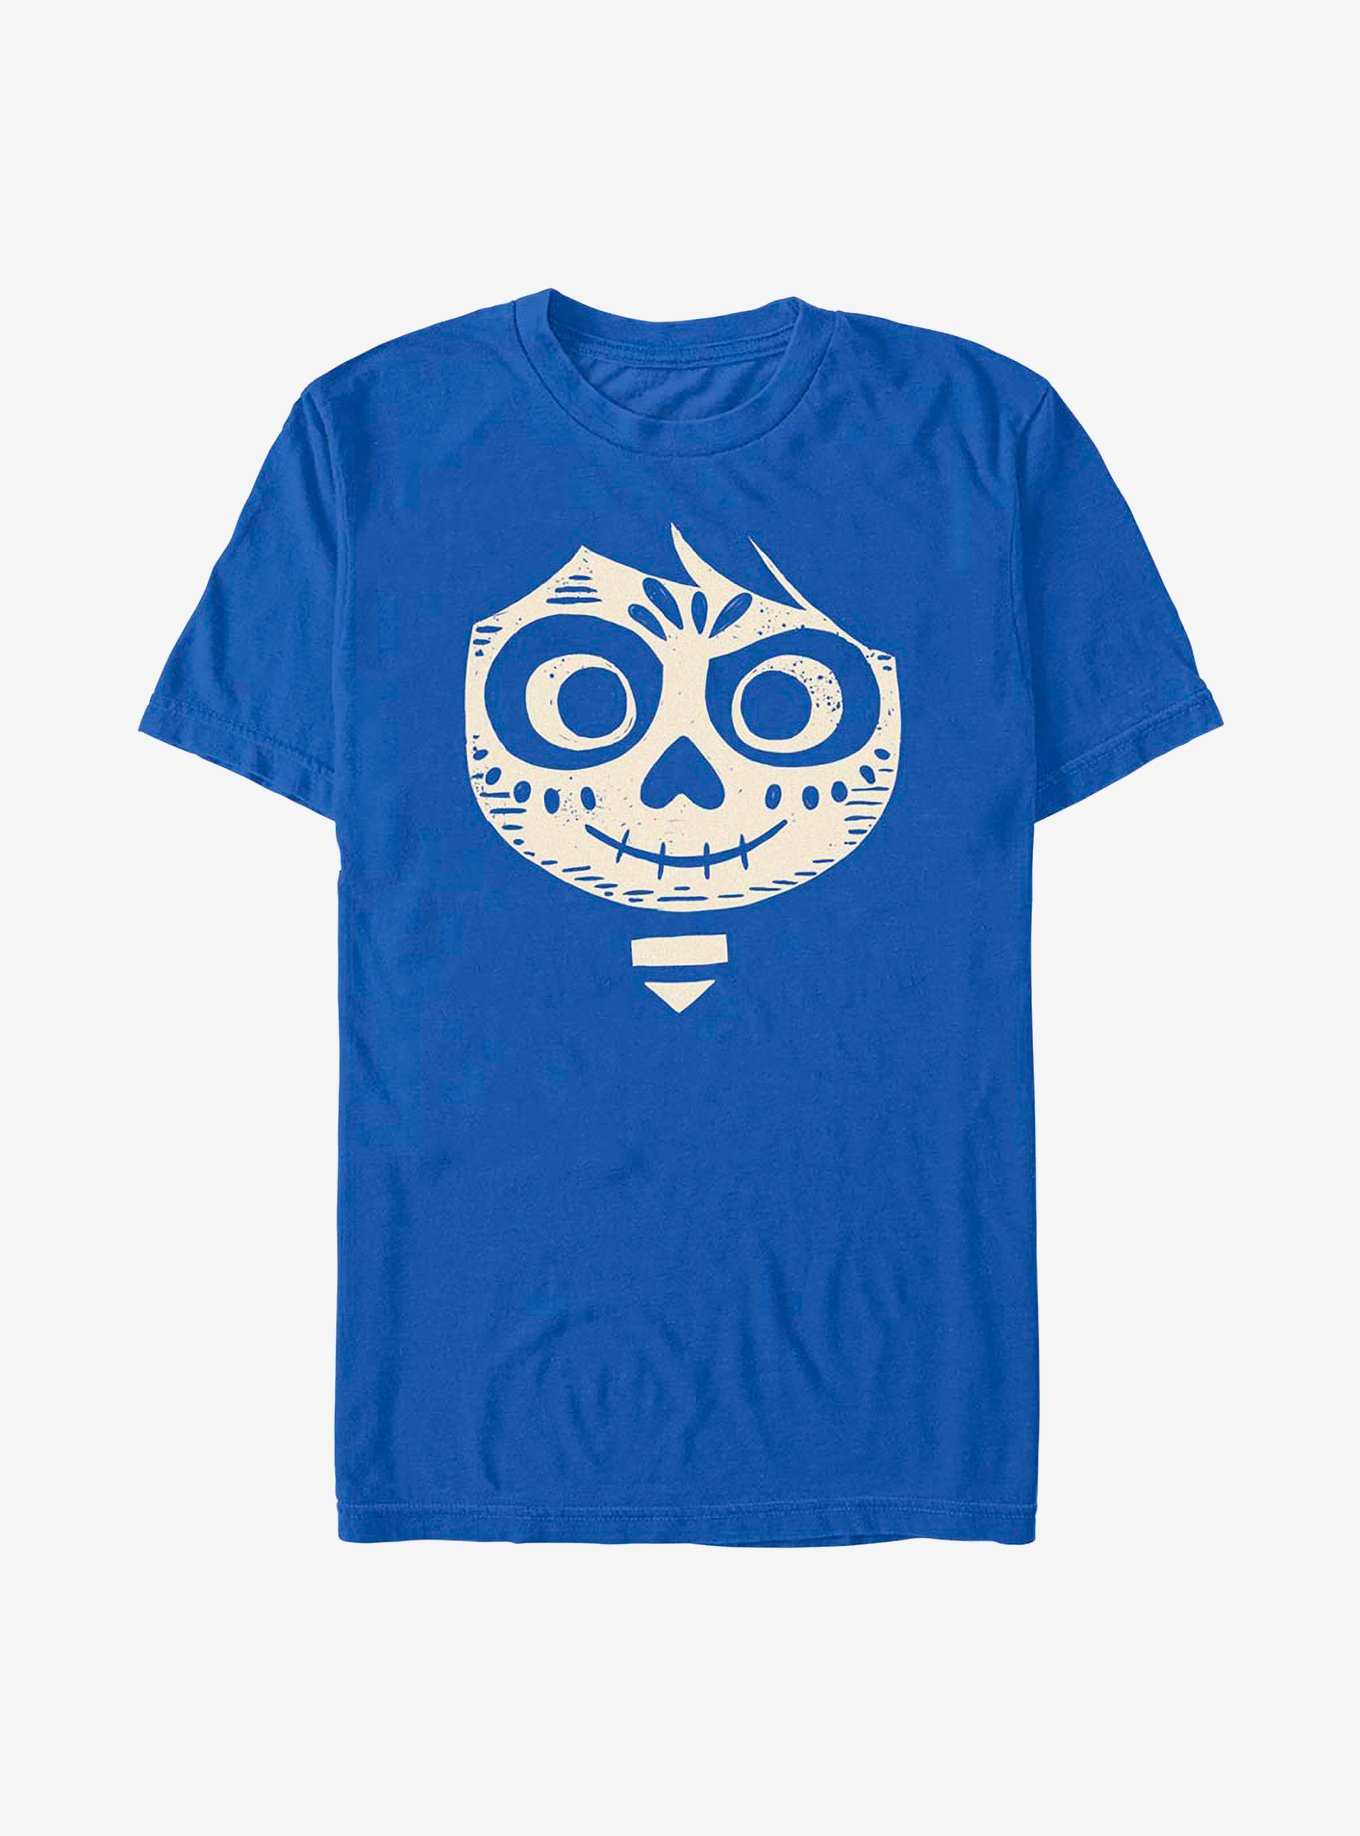 Disney Pixar Coco Miguel Face T-Shirt, , hi-res